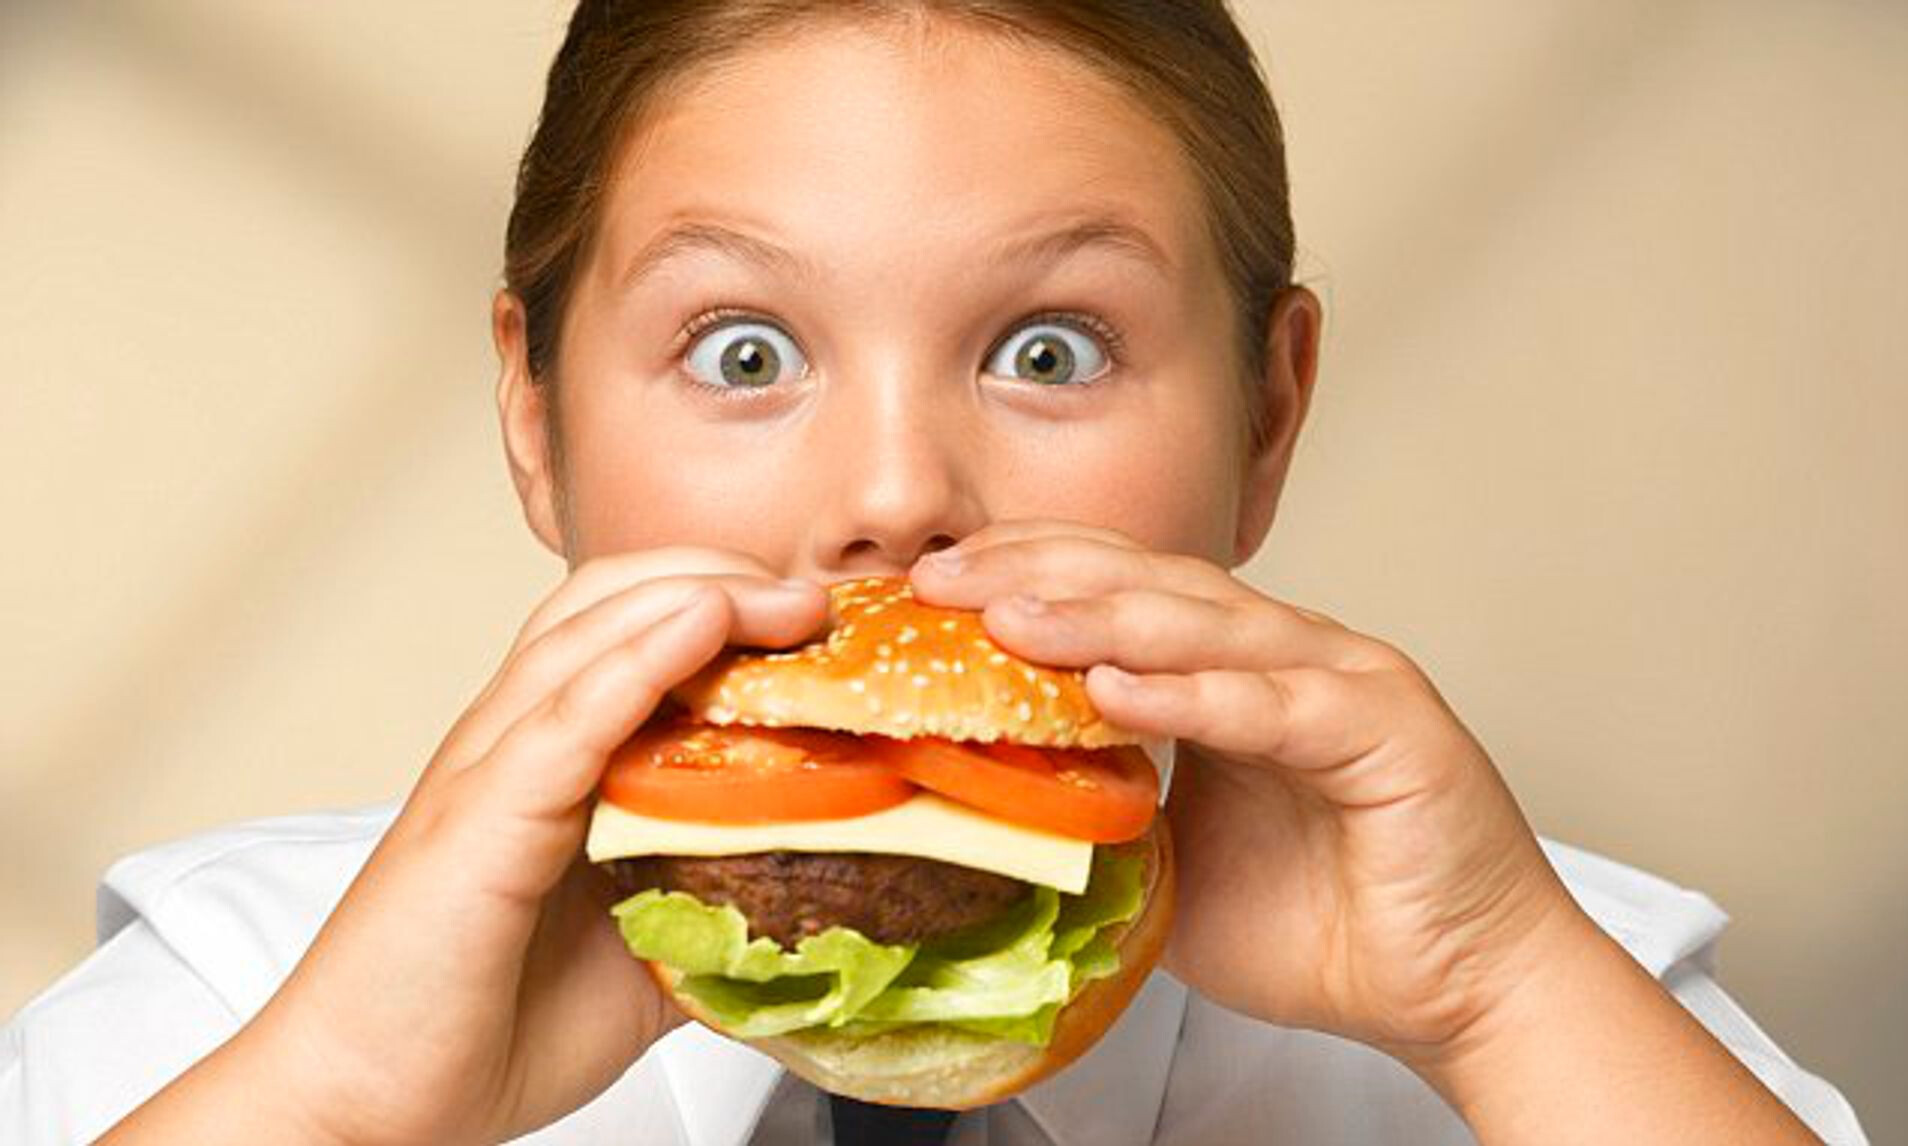 Проду ест. Ребенок ест гамбургер. Неправильное питание детей. Гамбургер для детей. Ожирение у подростков.